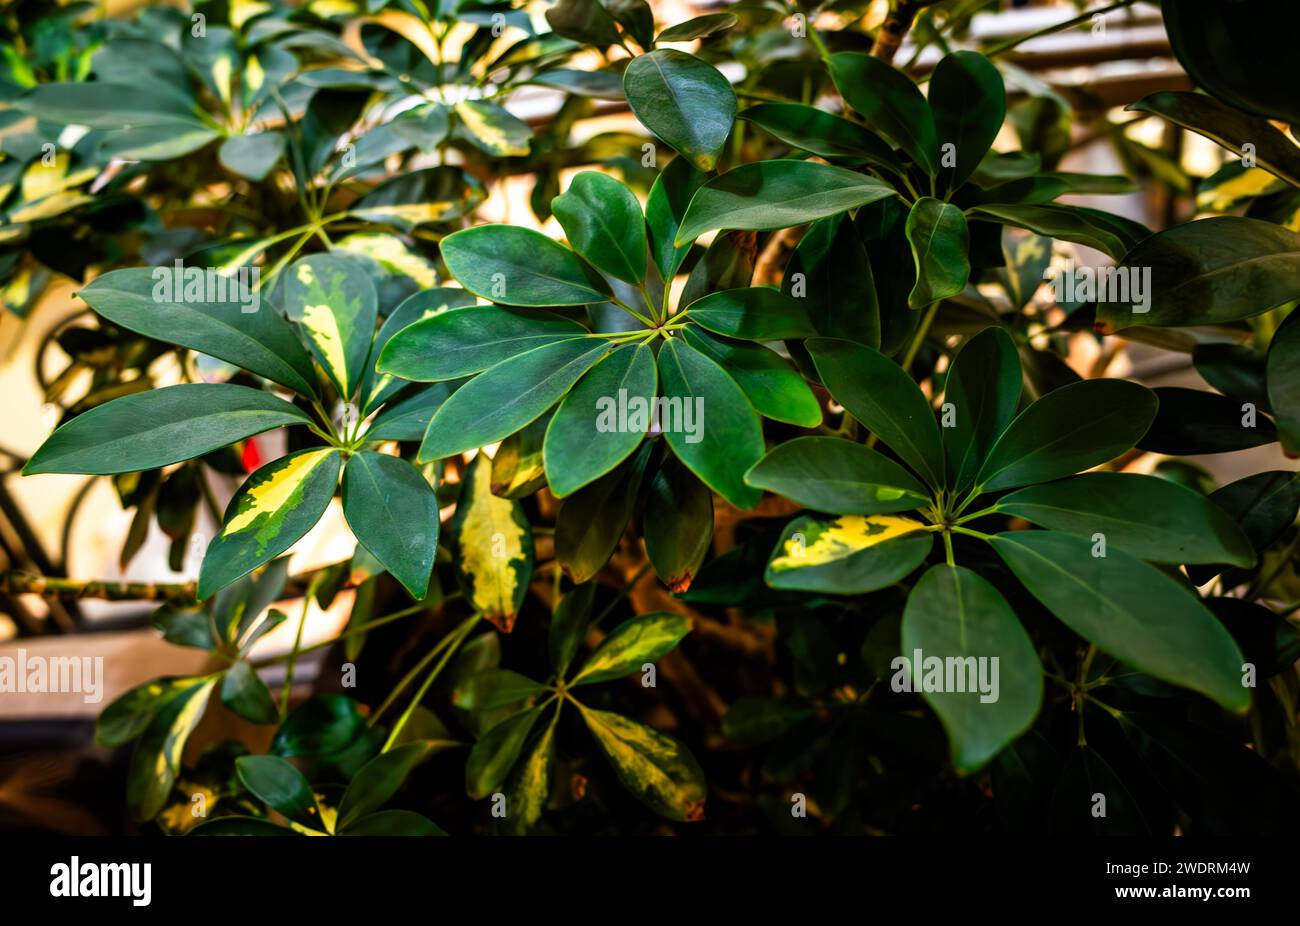 A vibrant garden filled with lush green dwarf umbrella tree (Heptapleurum arboricola) Stock Photo